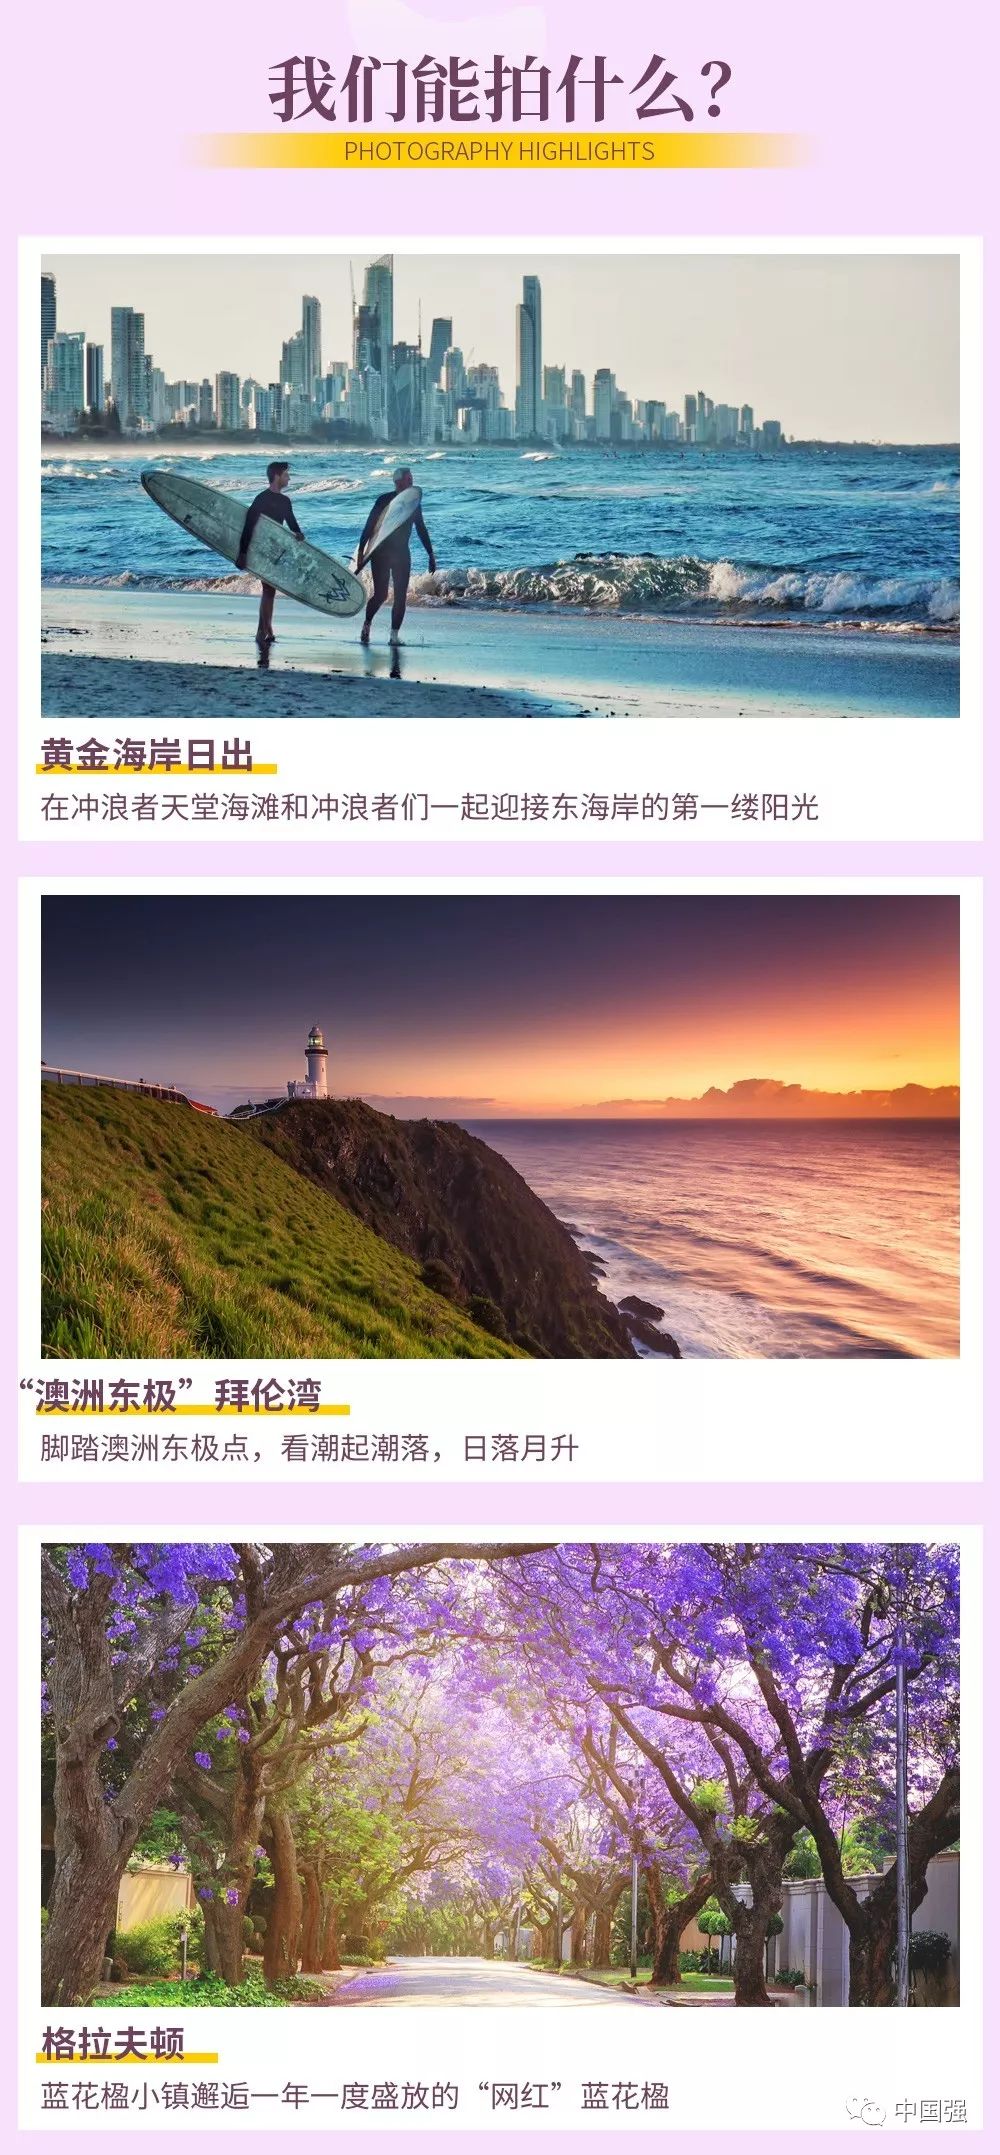 10月 澳大利亚蓝花楹寻澳之旅摄影团 13天 中国强 微信公众号文章阅读 Wemp